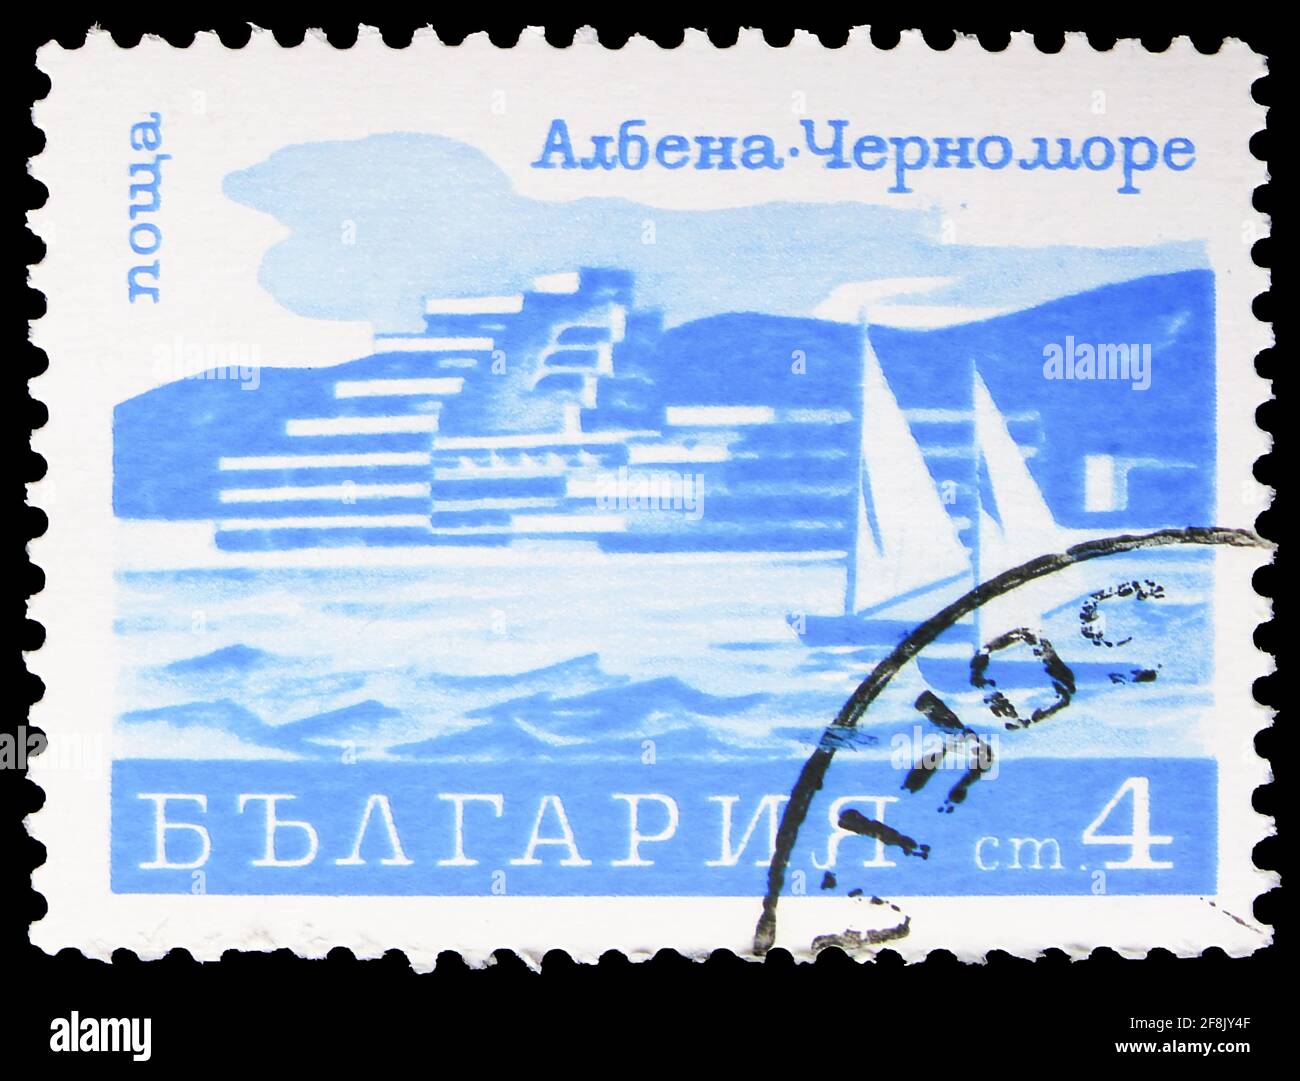 MOSKAU, RUSSLAND - 7. OKTOBER 2019: Die in Bulgarien gedruckte Briefmarke zeigt Yachts, Albena, Resorts Serie, um 1970 Stockfoto